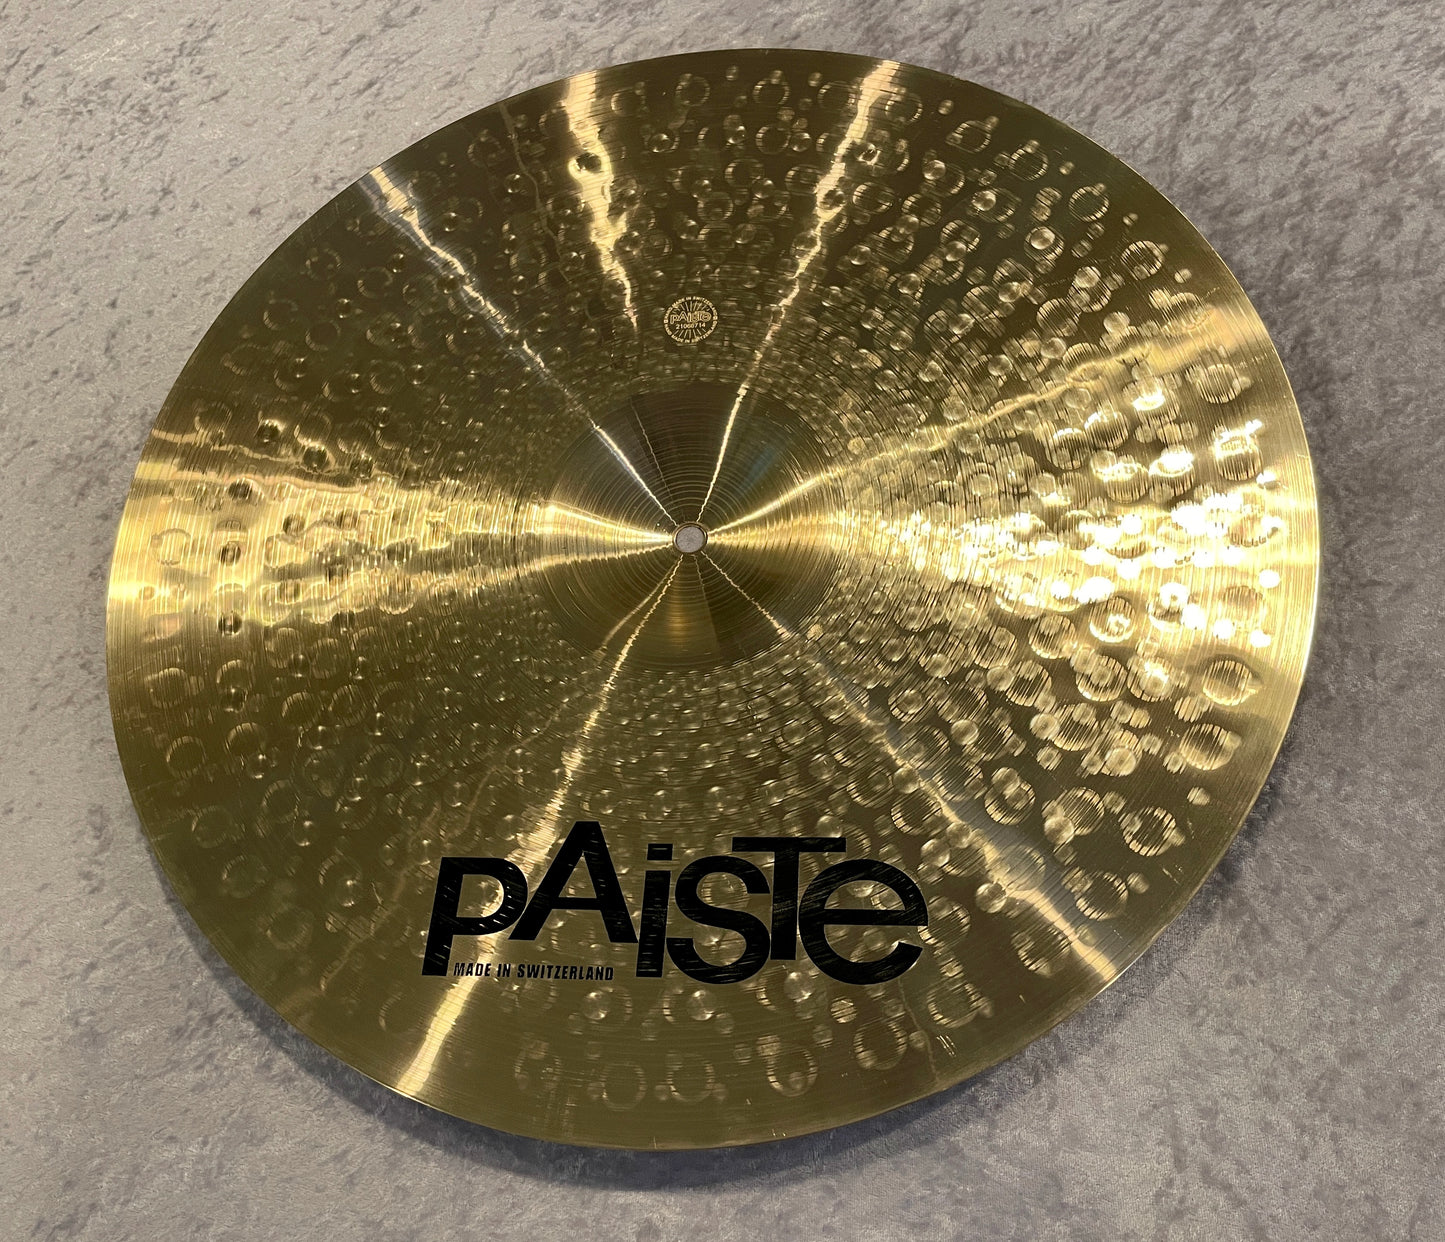 19" Paiste Signature Dark Energy Mark I Crash Cymbal 1714g